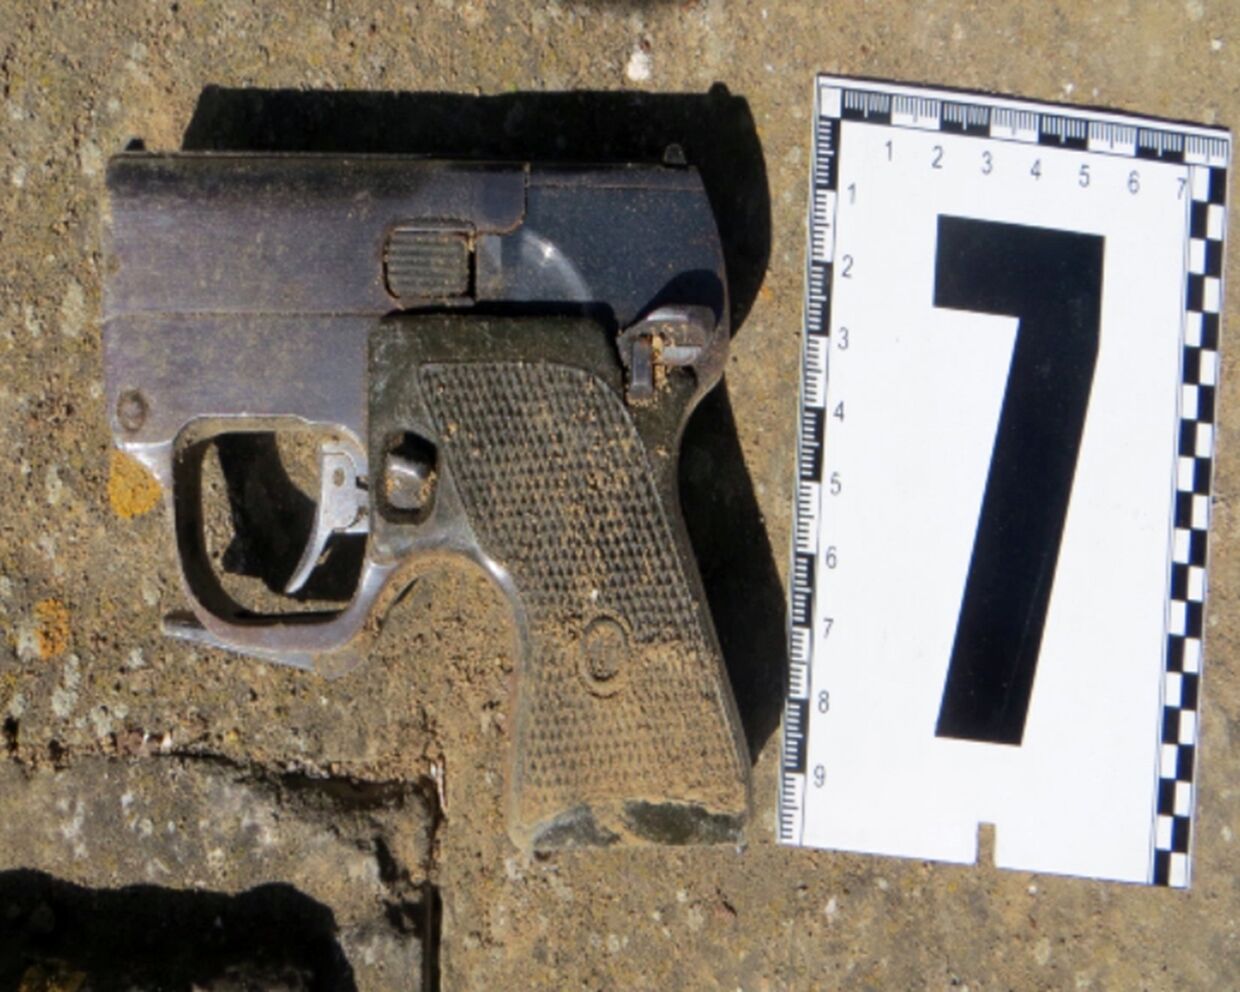 Пистолет, обнаруженый в ходе задержания украинских диверсантов сотрудниками ФСБ России в Крыму